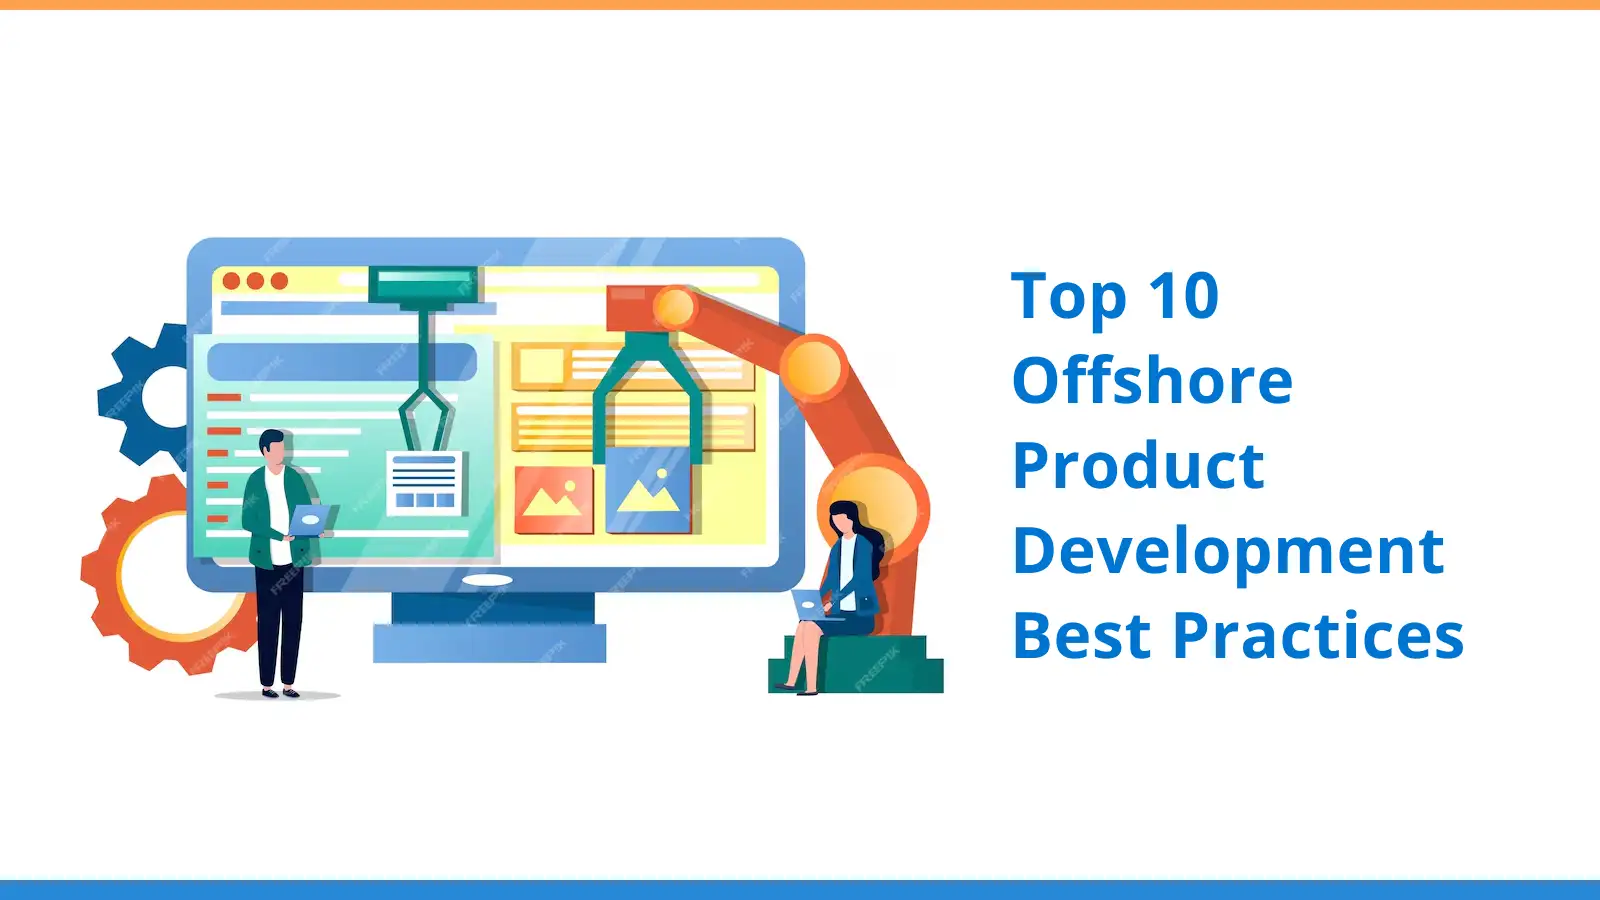 Top 10 Offshore Product Development Best Practices